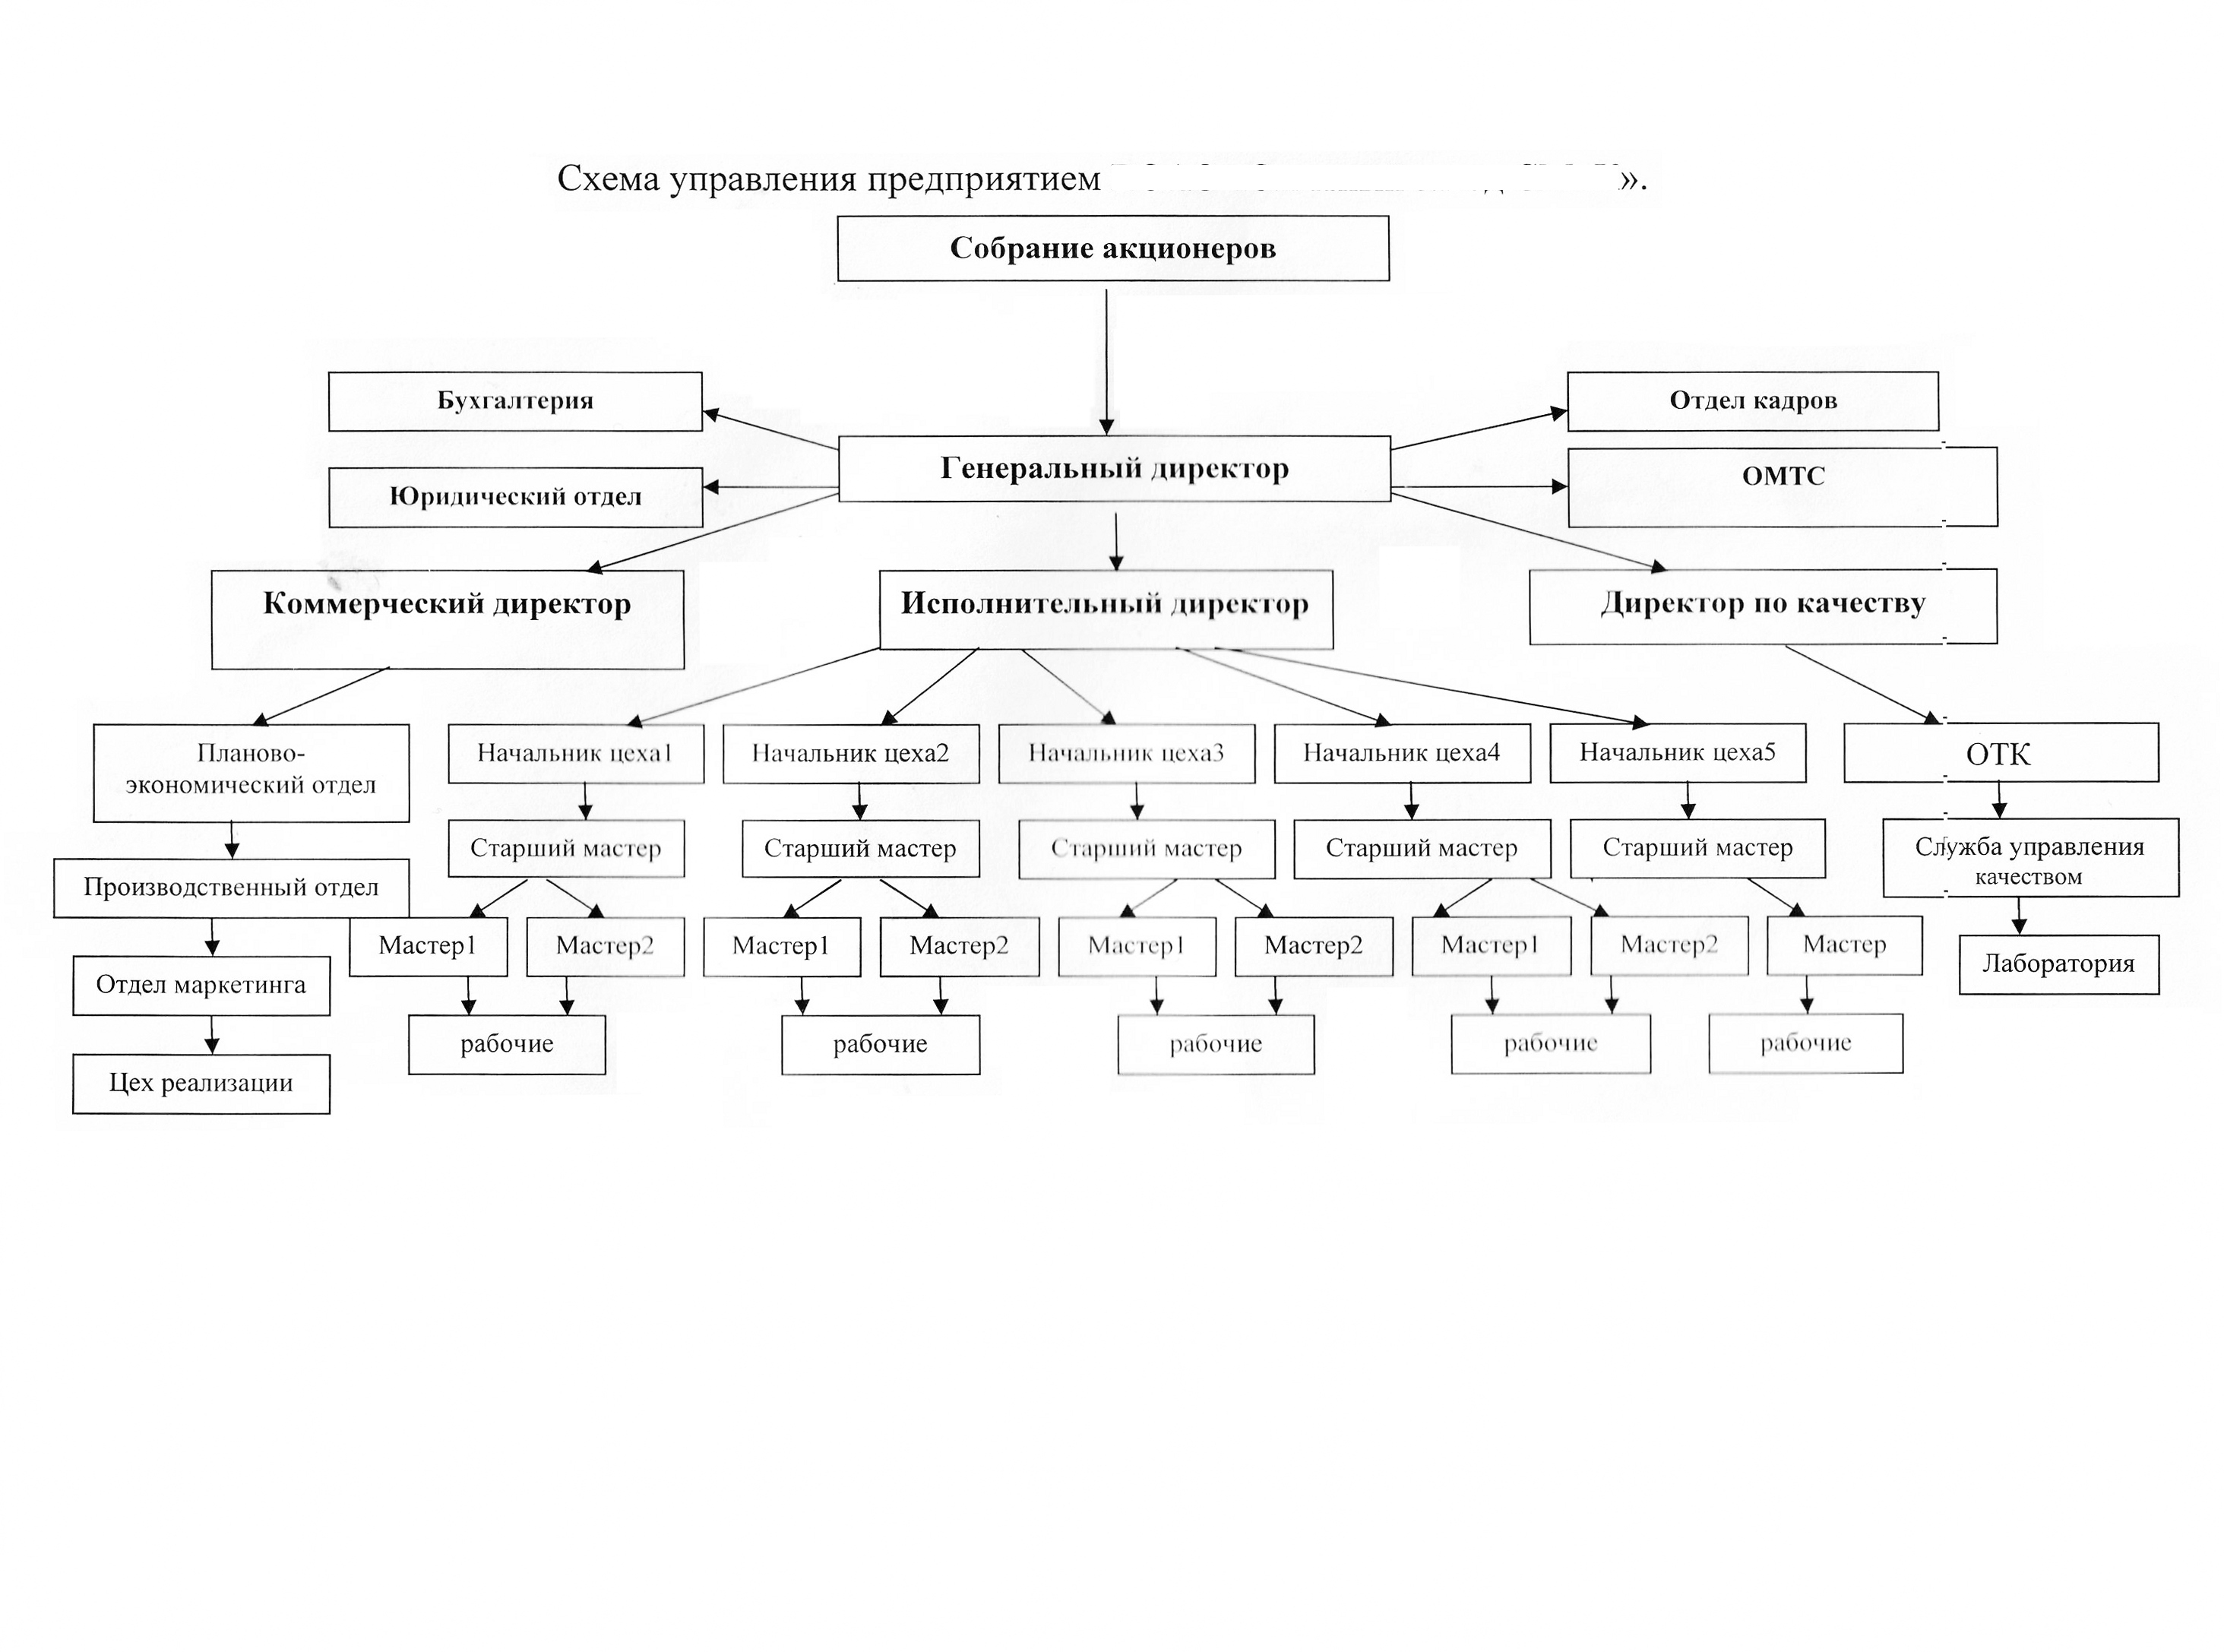 Организационная структура управления предприятием схема